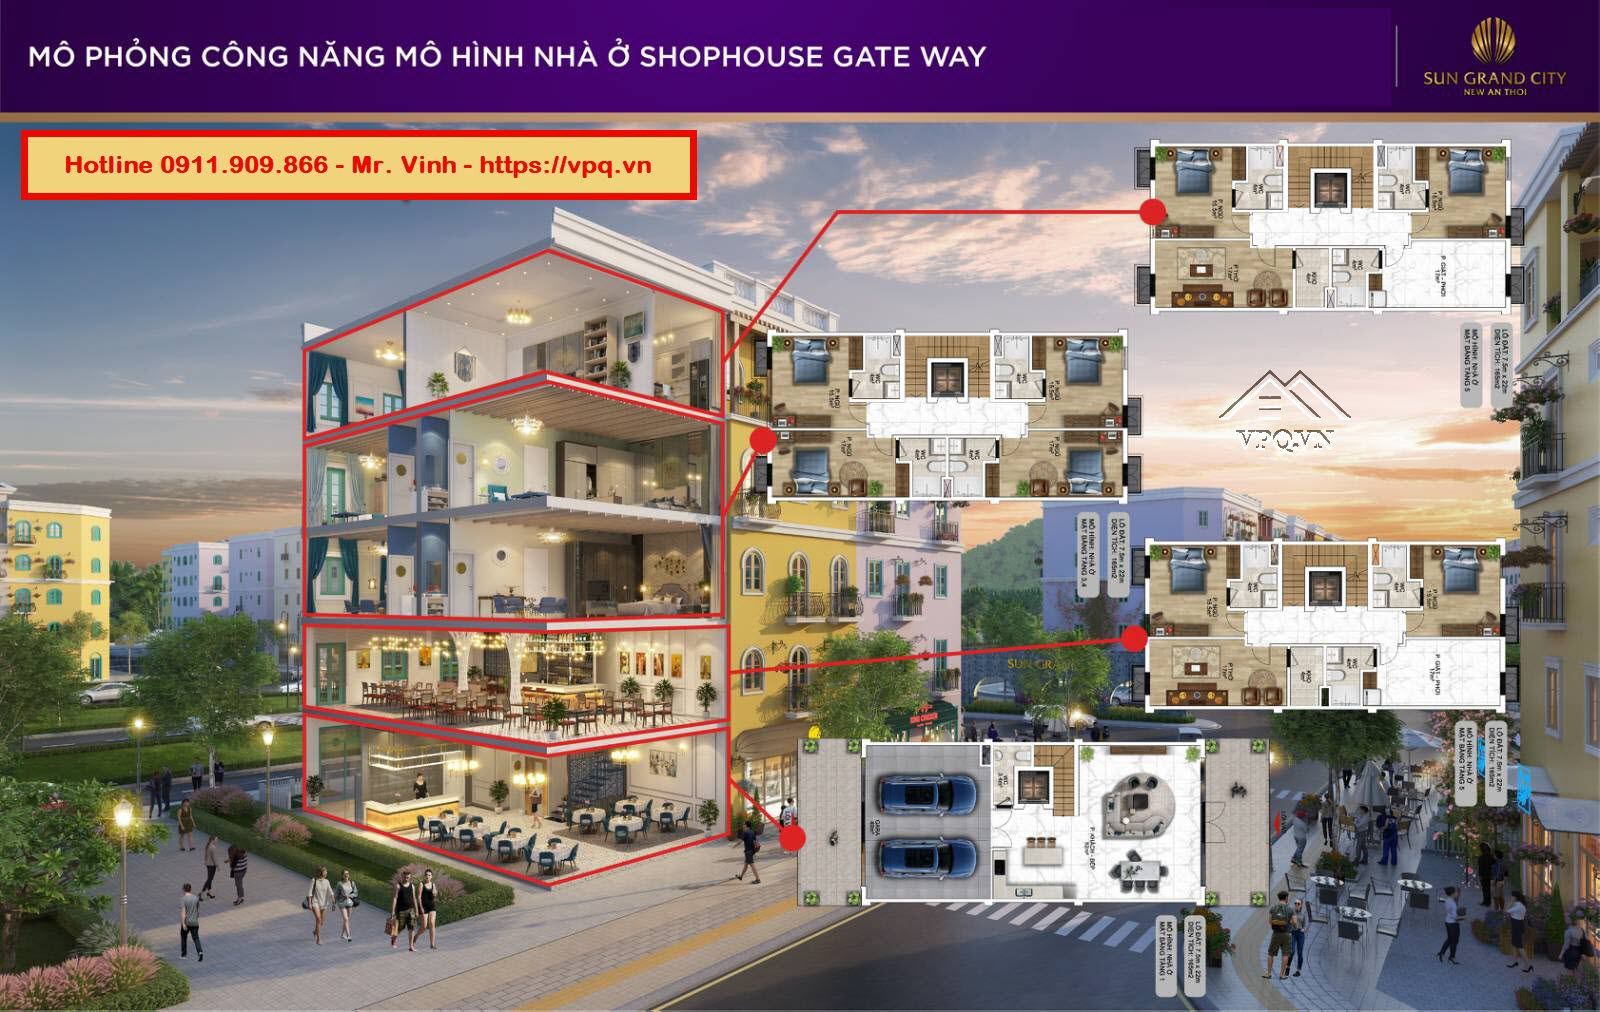 Thiết kế Shophouse Gateway An Thới mô hình cafe + nhà ở